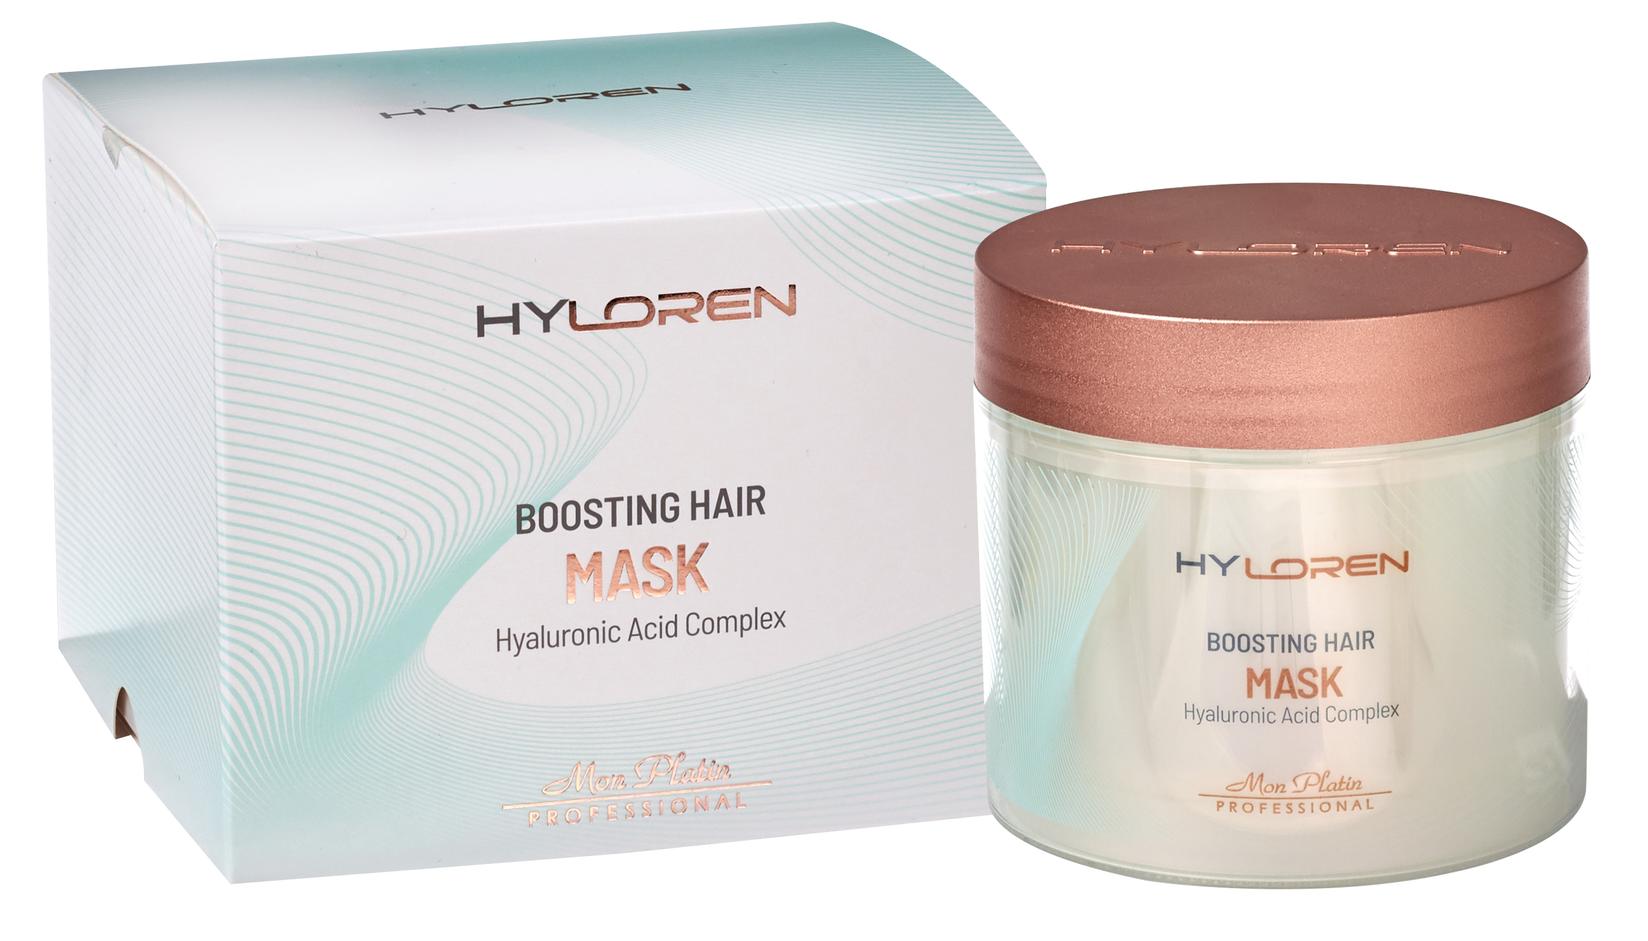 MON PLATIN Maska za kosu Hiloren Premium Boosting 500ml